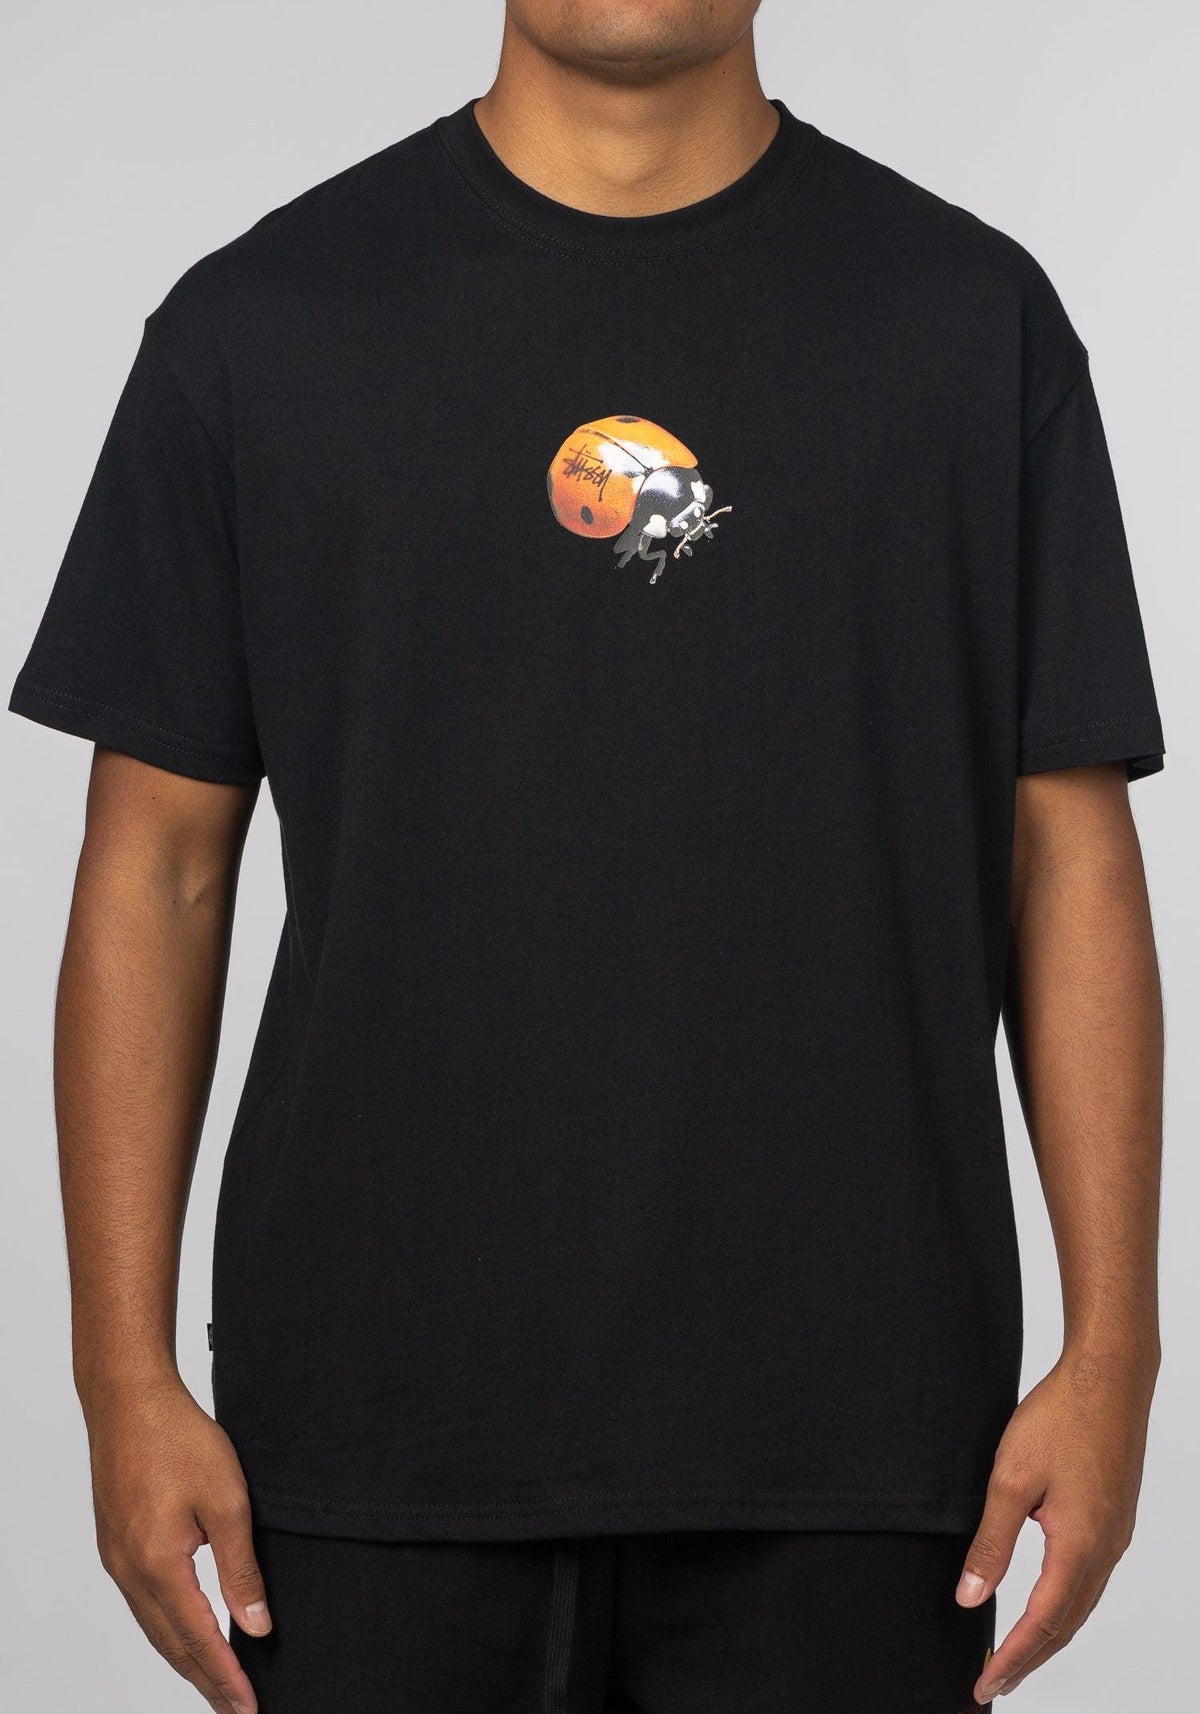 Ladybug T-Shirt - Black - LOADED